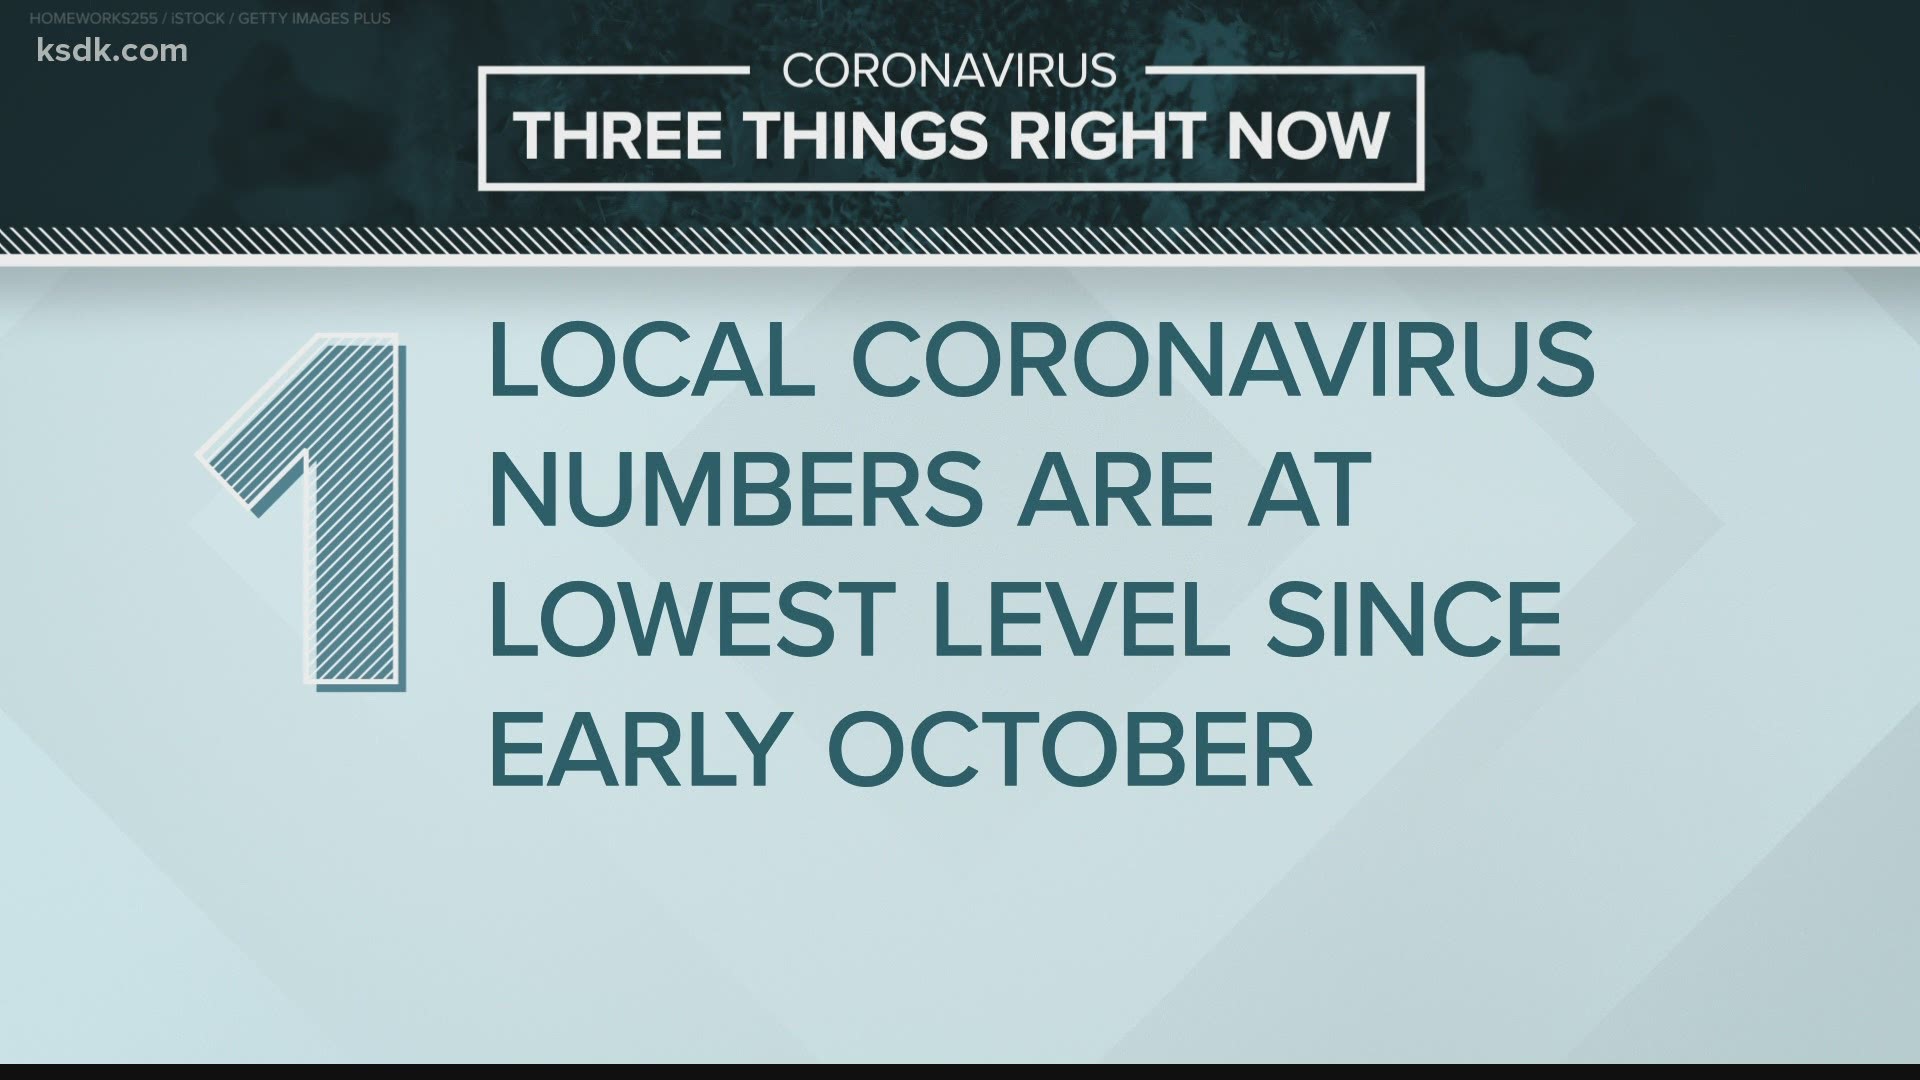 Here are the latest coronavirus headlines from Feb. 8, 2021.